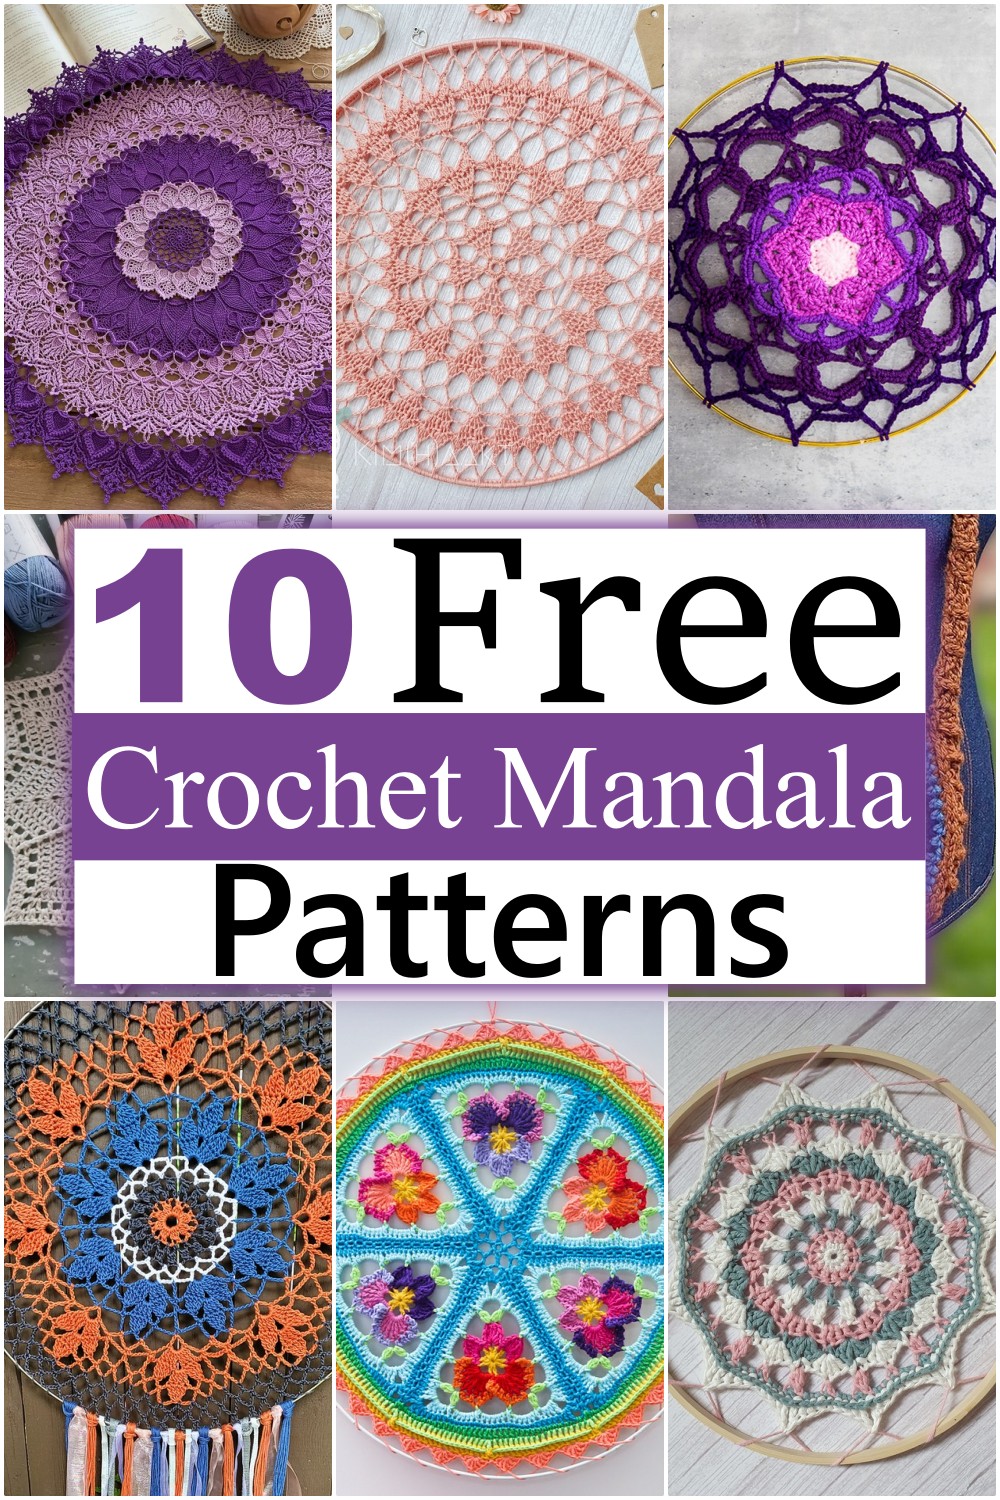 Crochet Mandala Patterns